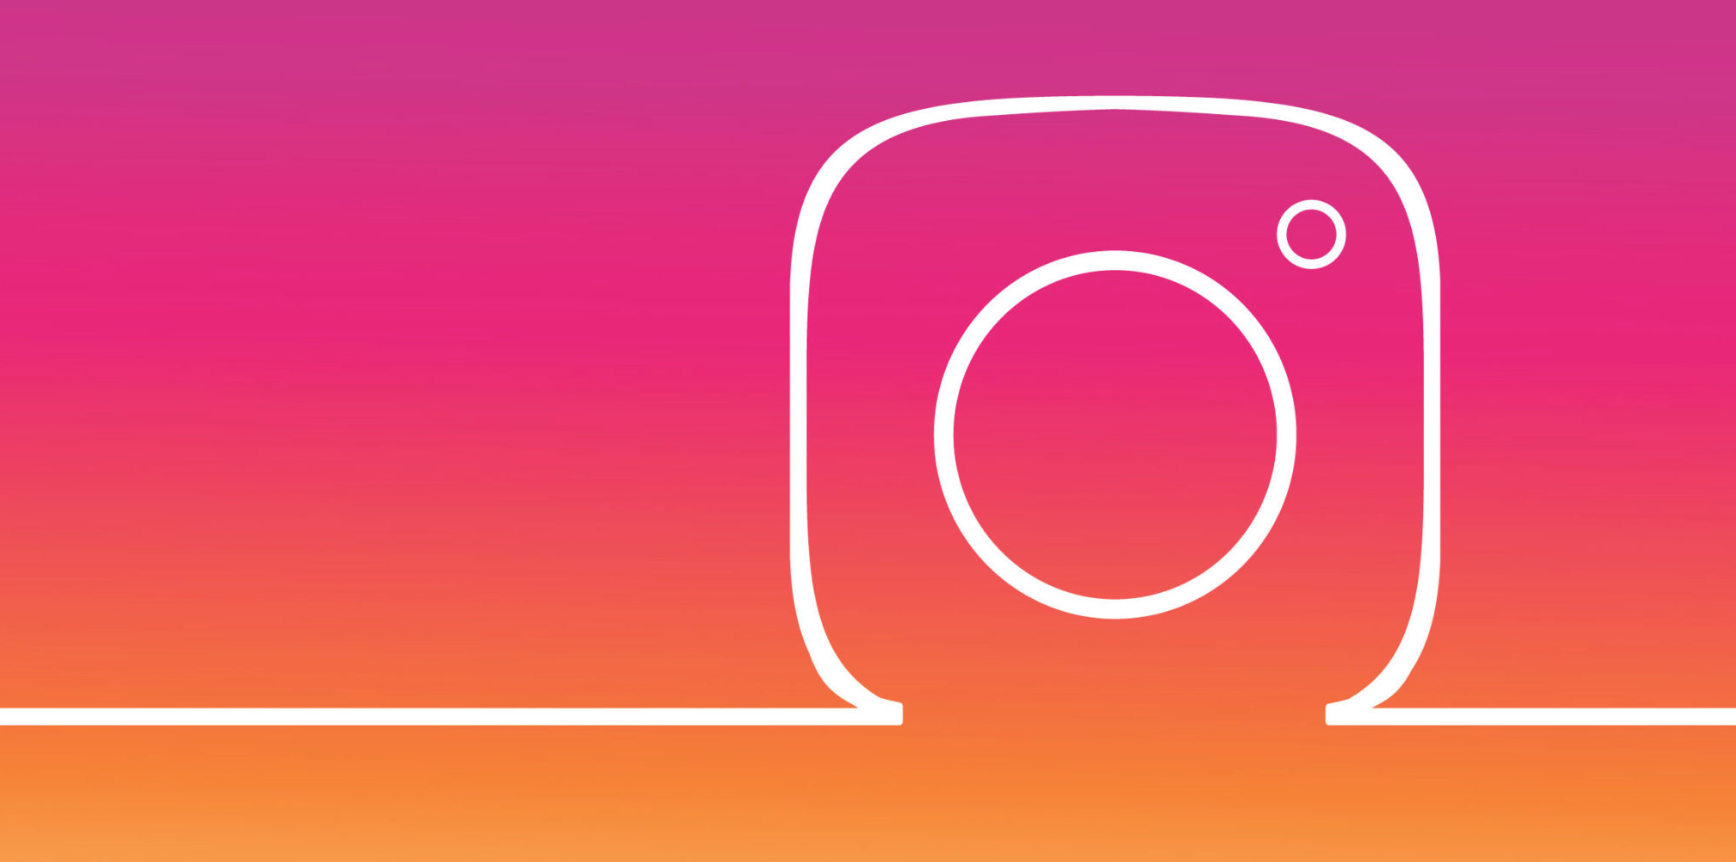 Korzystaj z danych pochodzących z Instagrama w pełni!